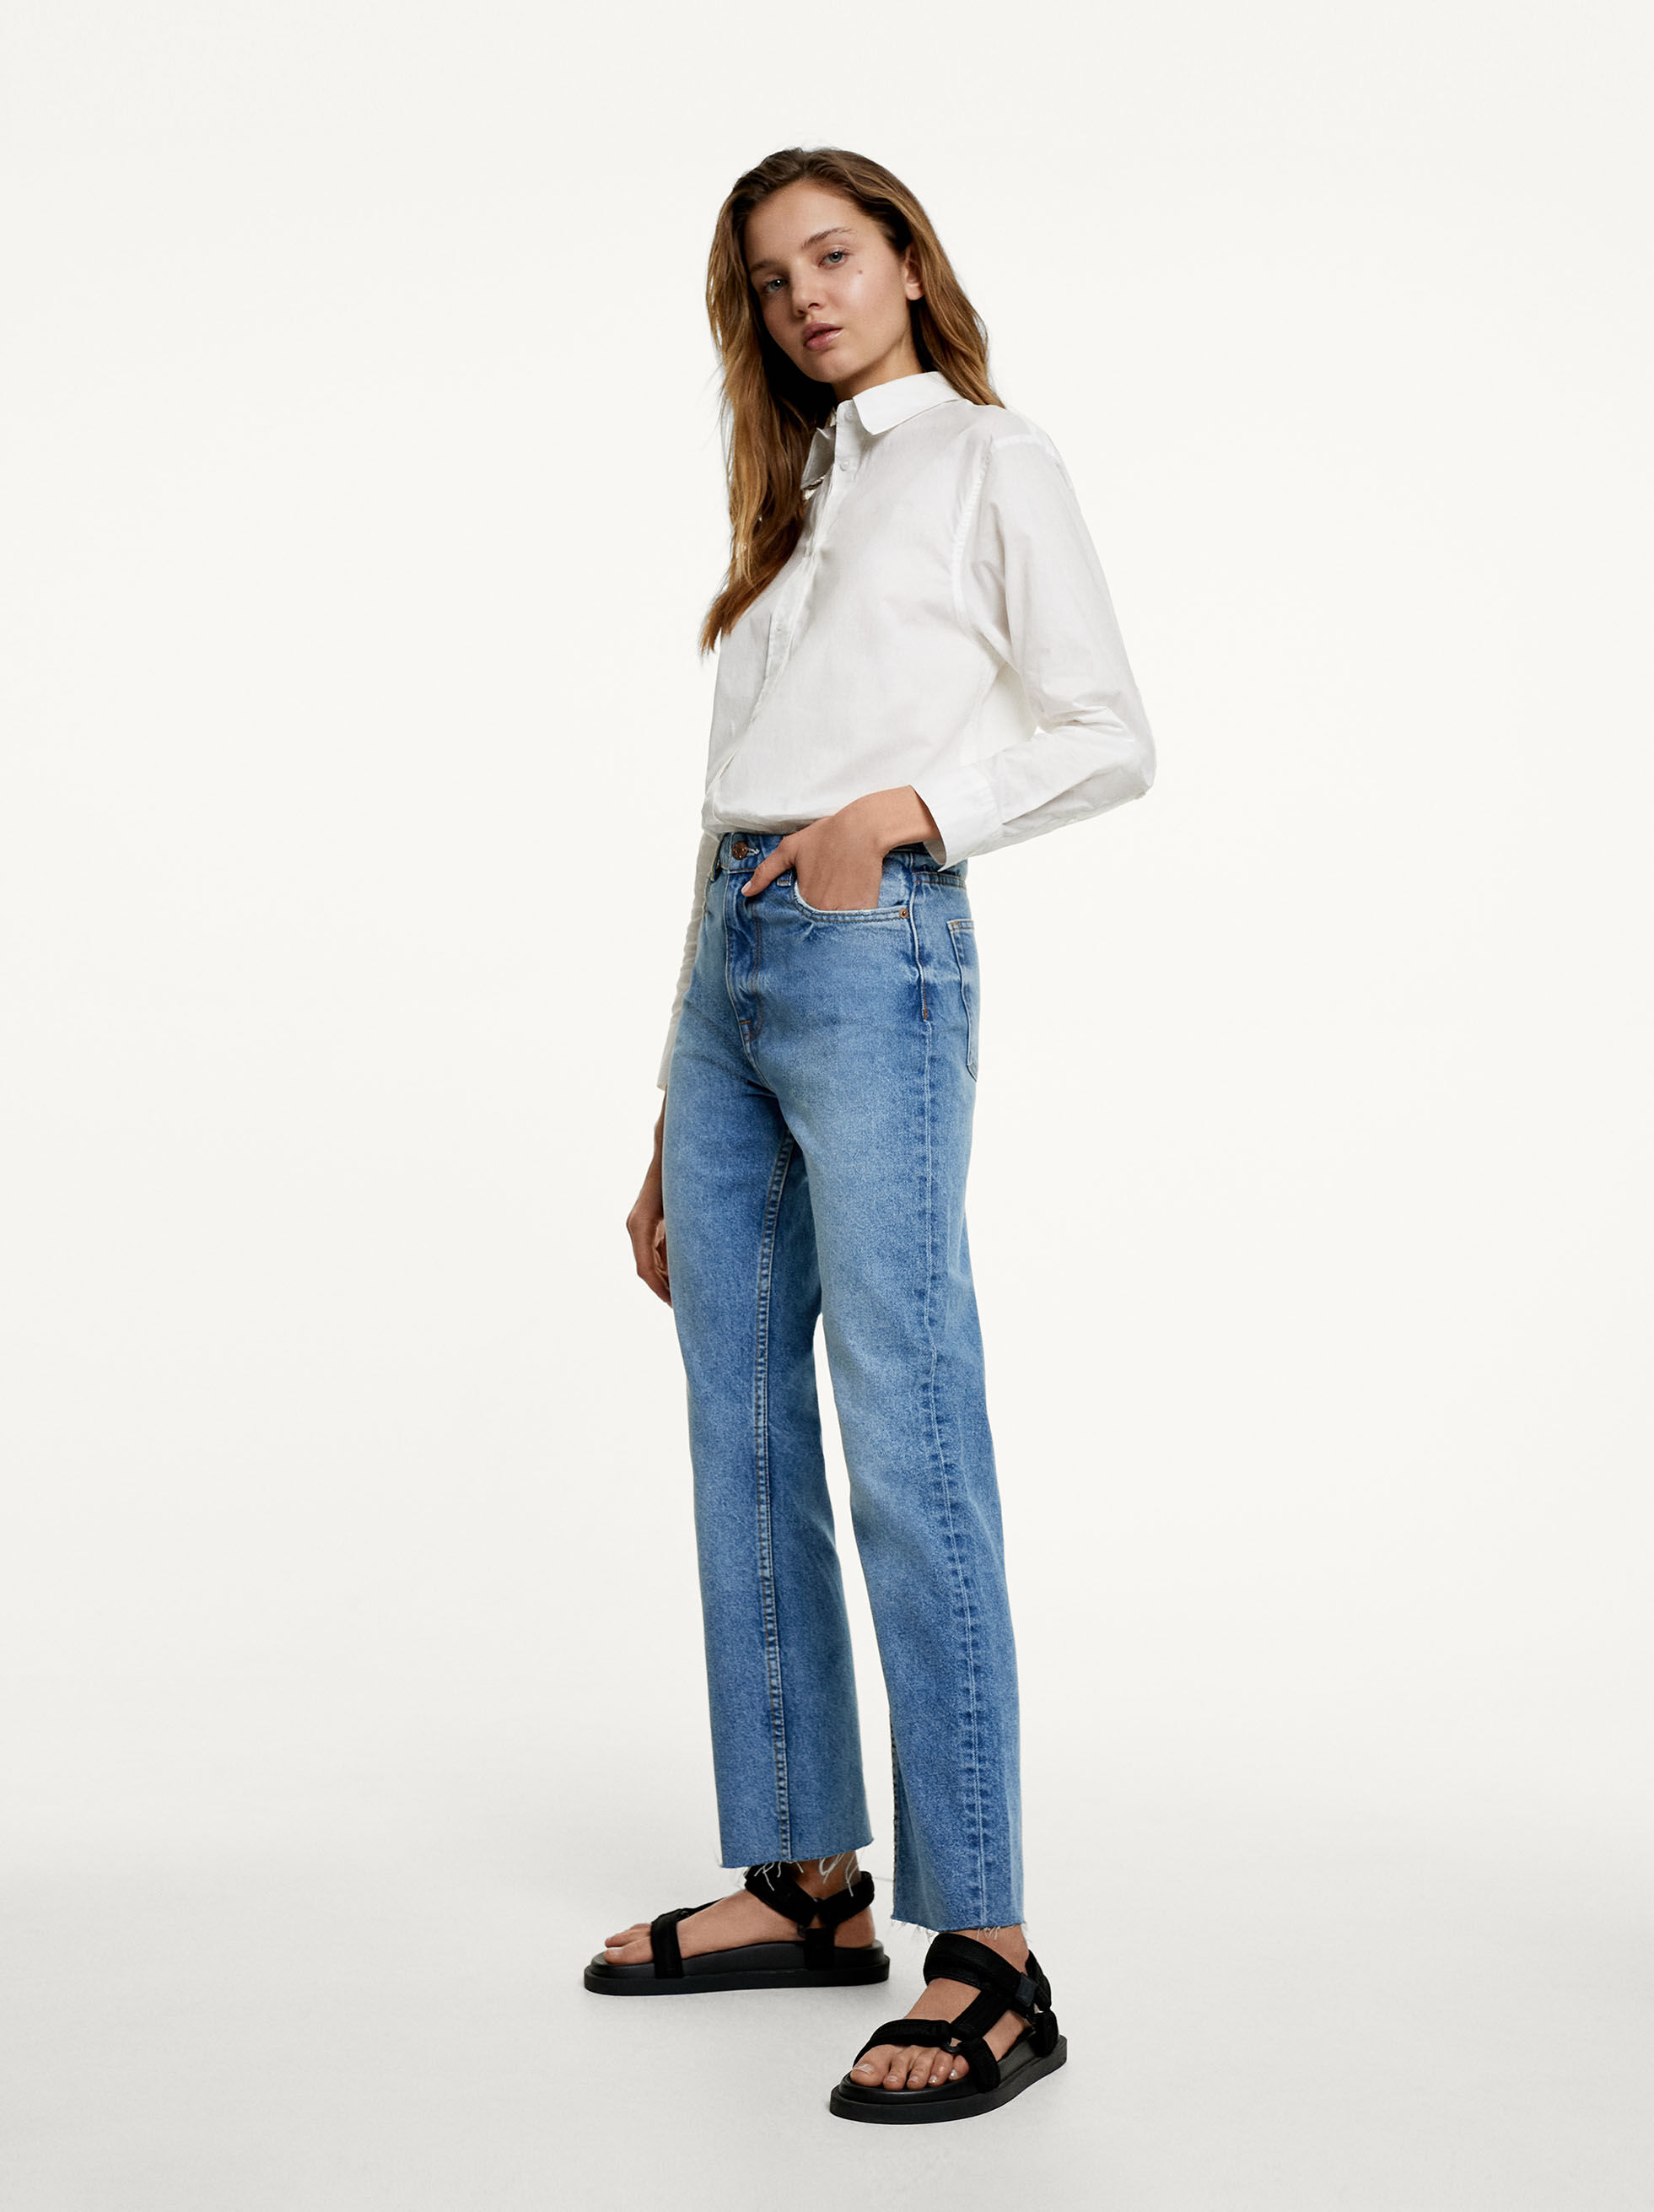 معدود
 ناشر العطر
 في الامس
 علم تحسين النسل
 سيئ الحظ
  Customizable Jeans Blue Woman Trousers